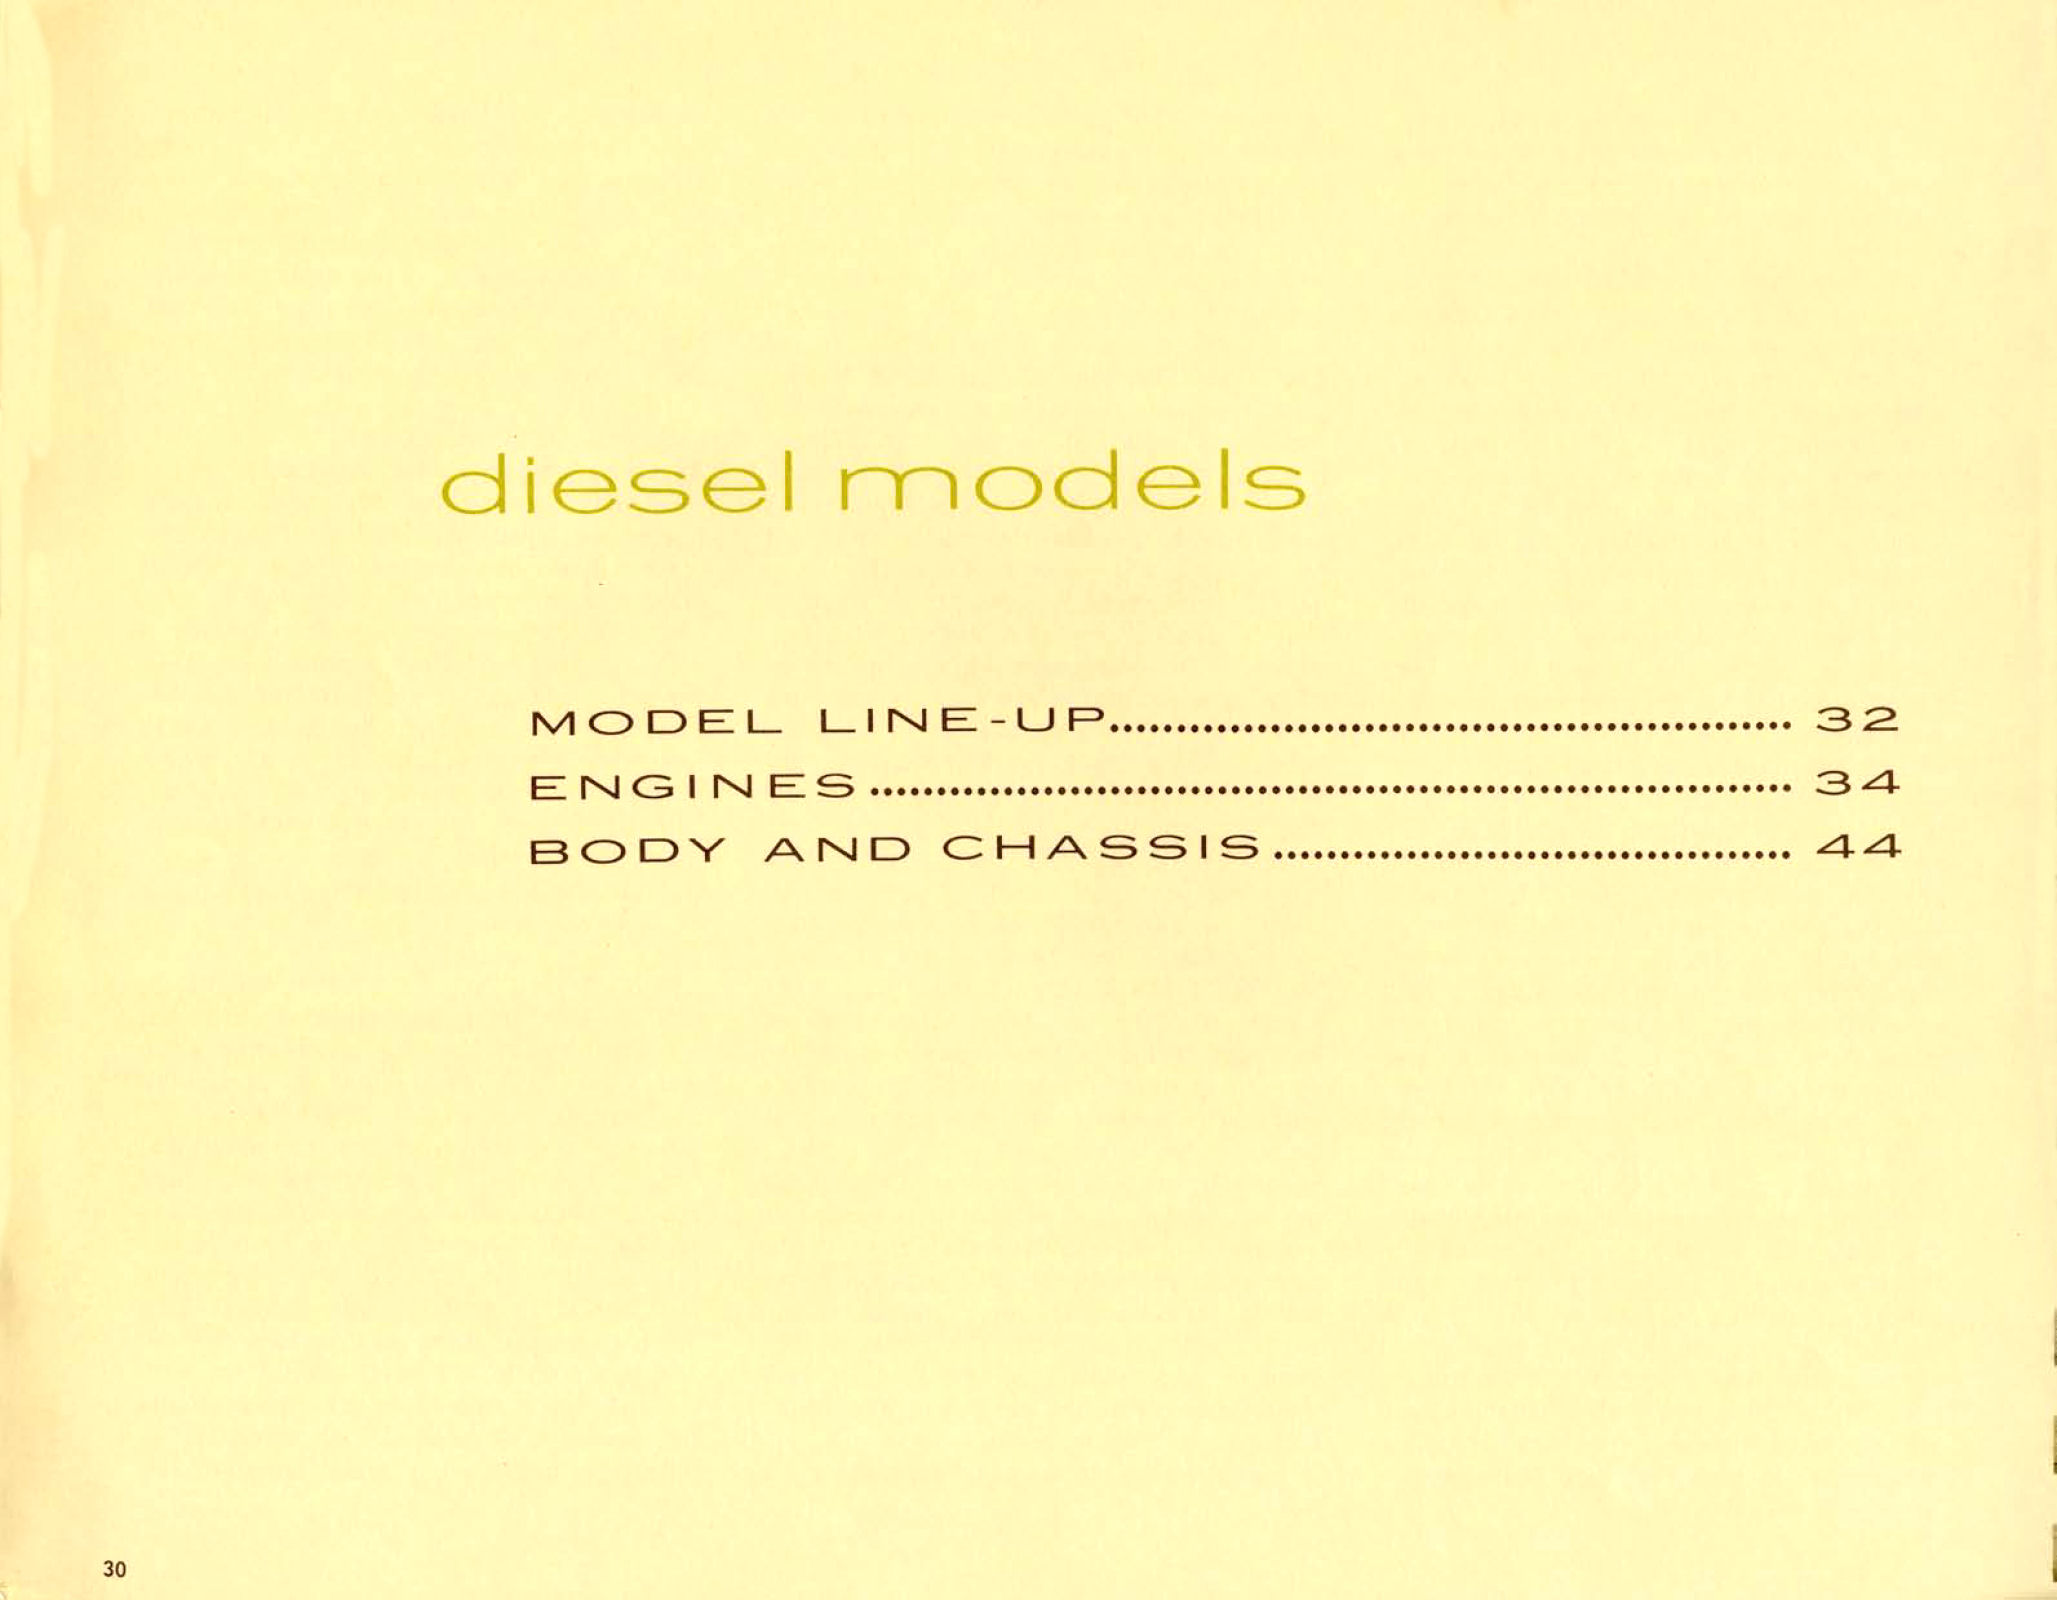 1965_Chevrolet_Truck_Engineering_Features-30